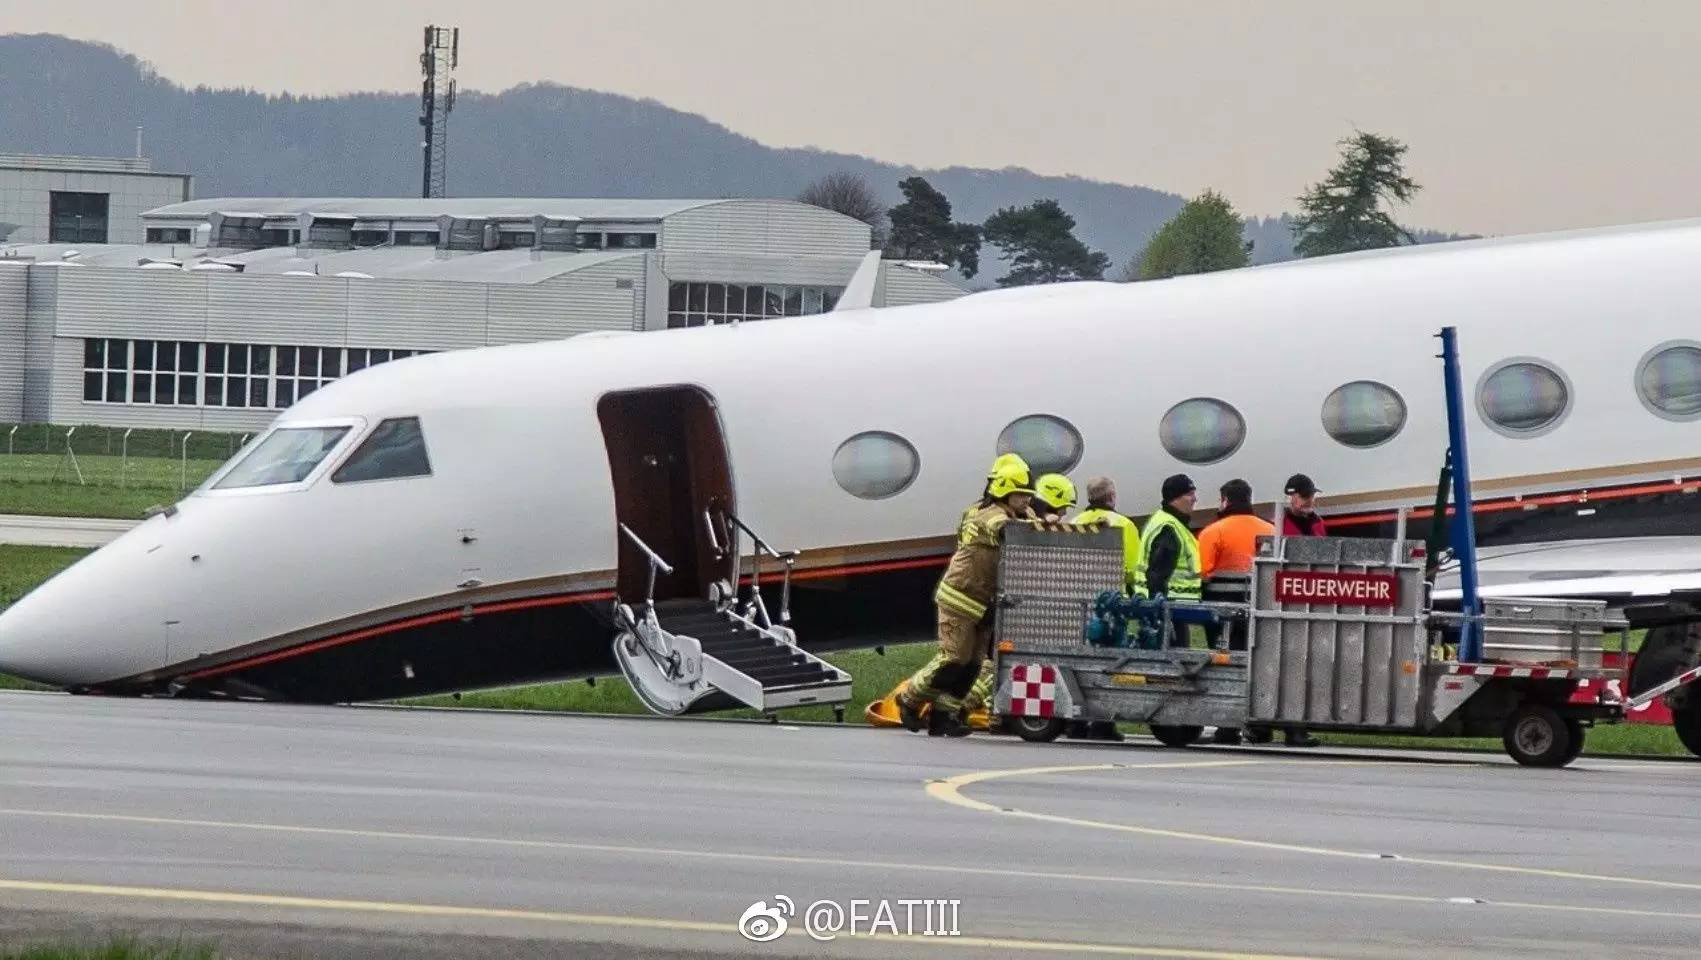 【通航事故】一架湾流g450飞机机鼻撞向地面;滨州闹市空中居然掉下